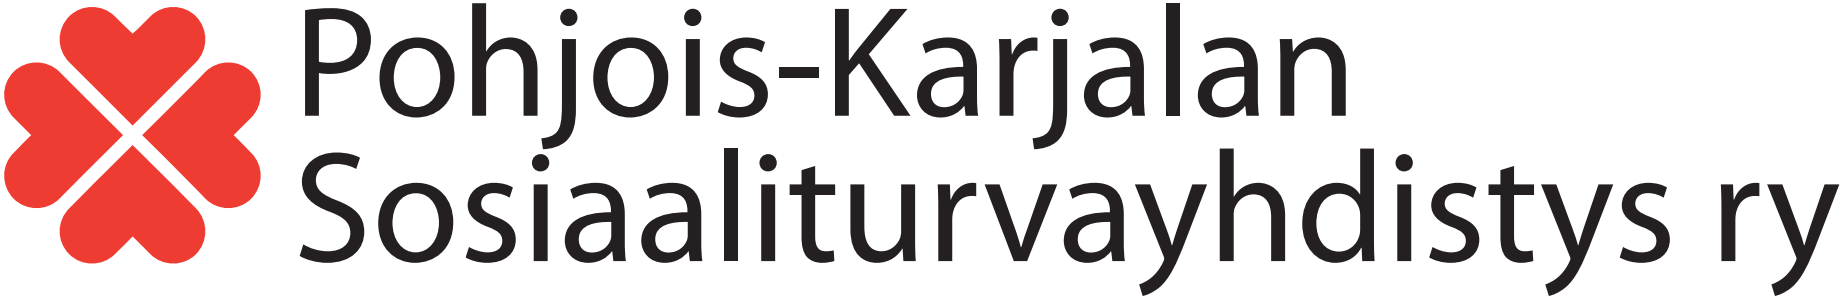 Pohjois-Karjalan sosiaaliturvayhdistyksen logo